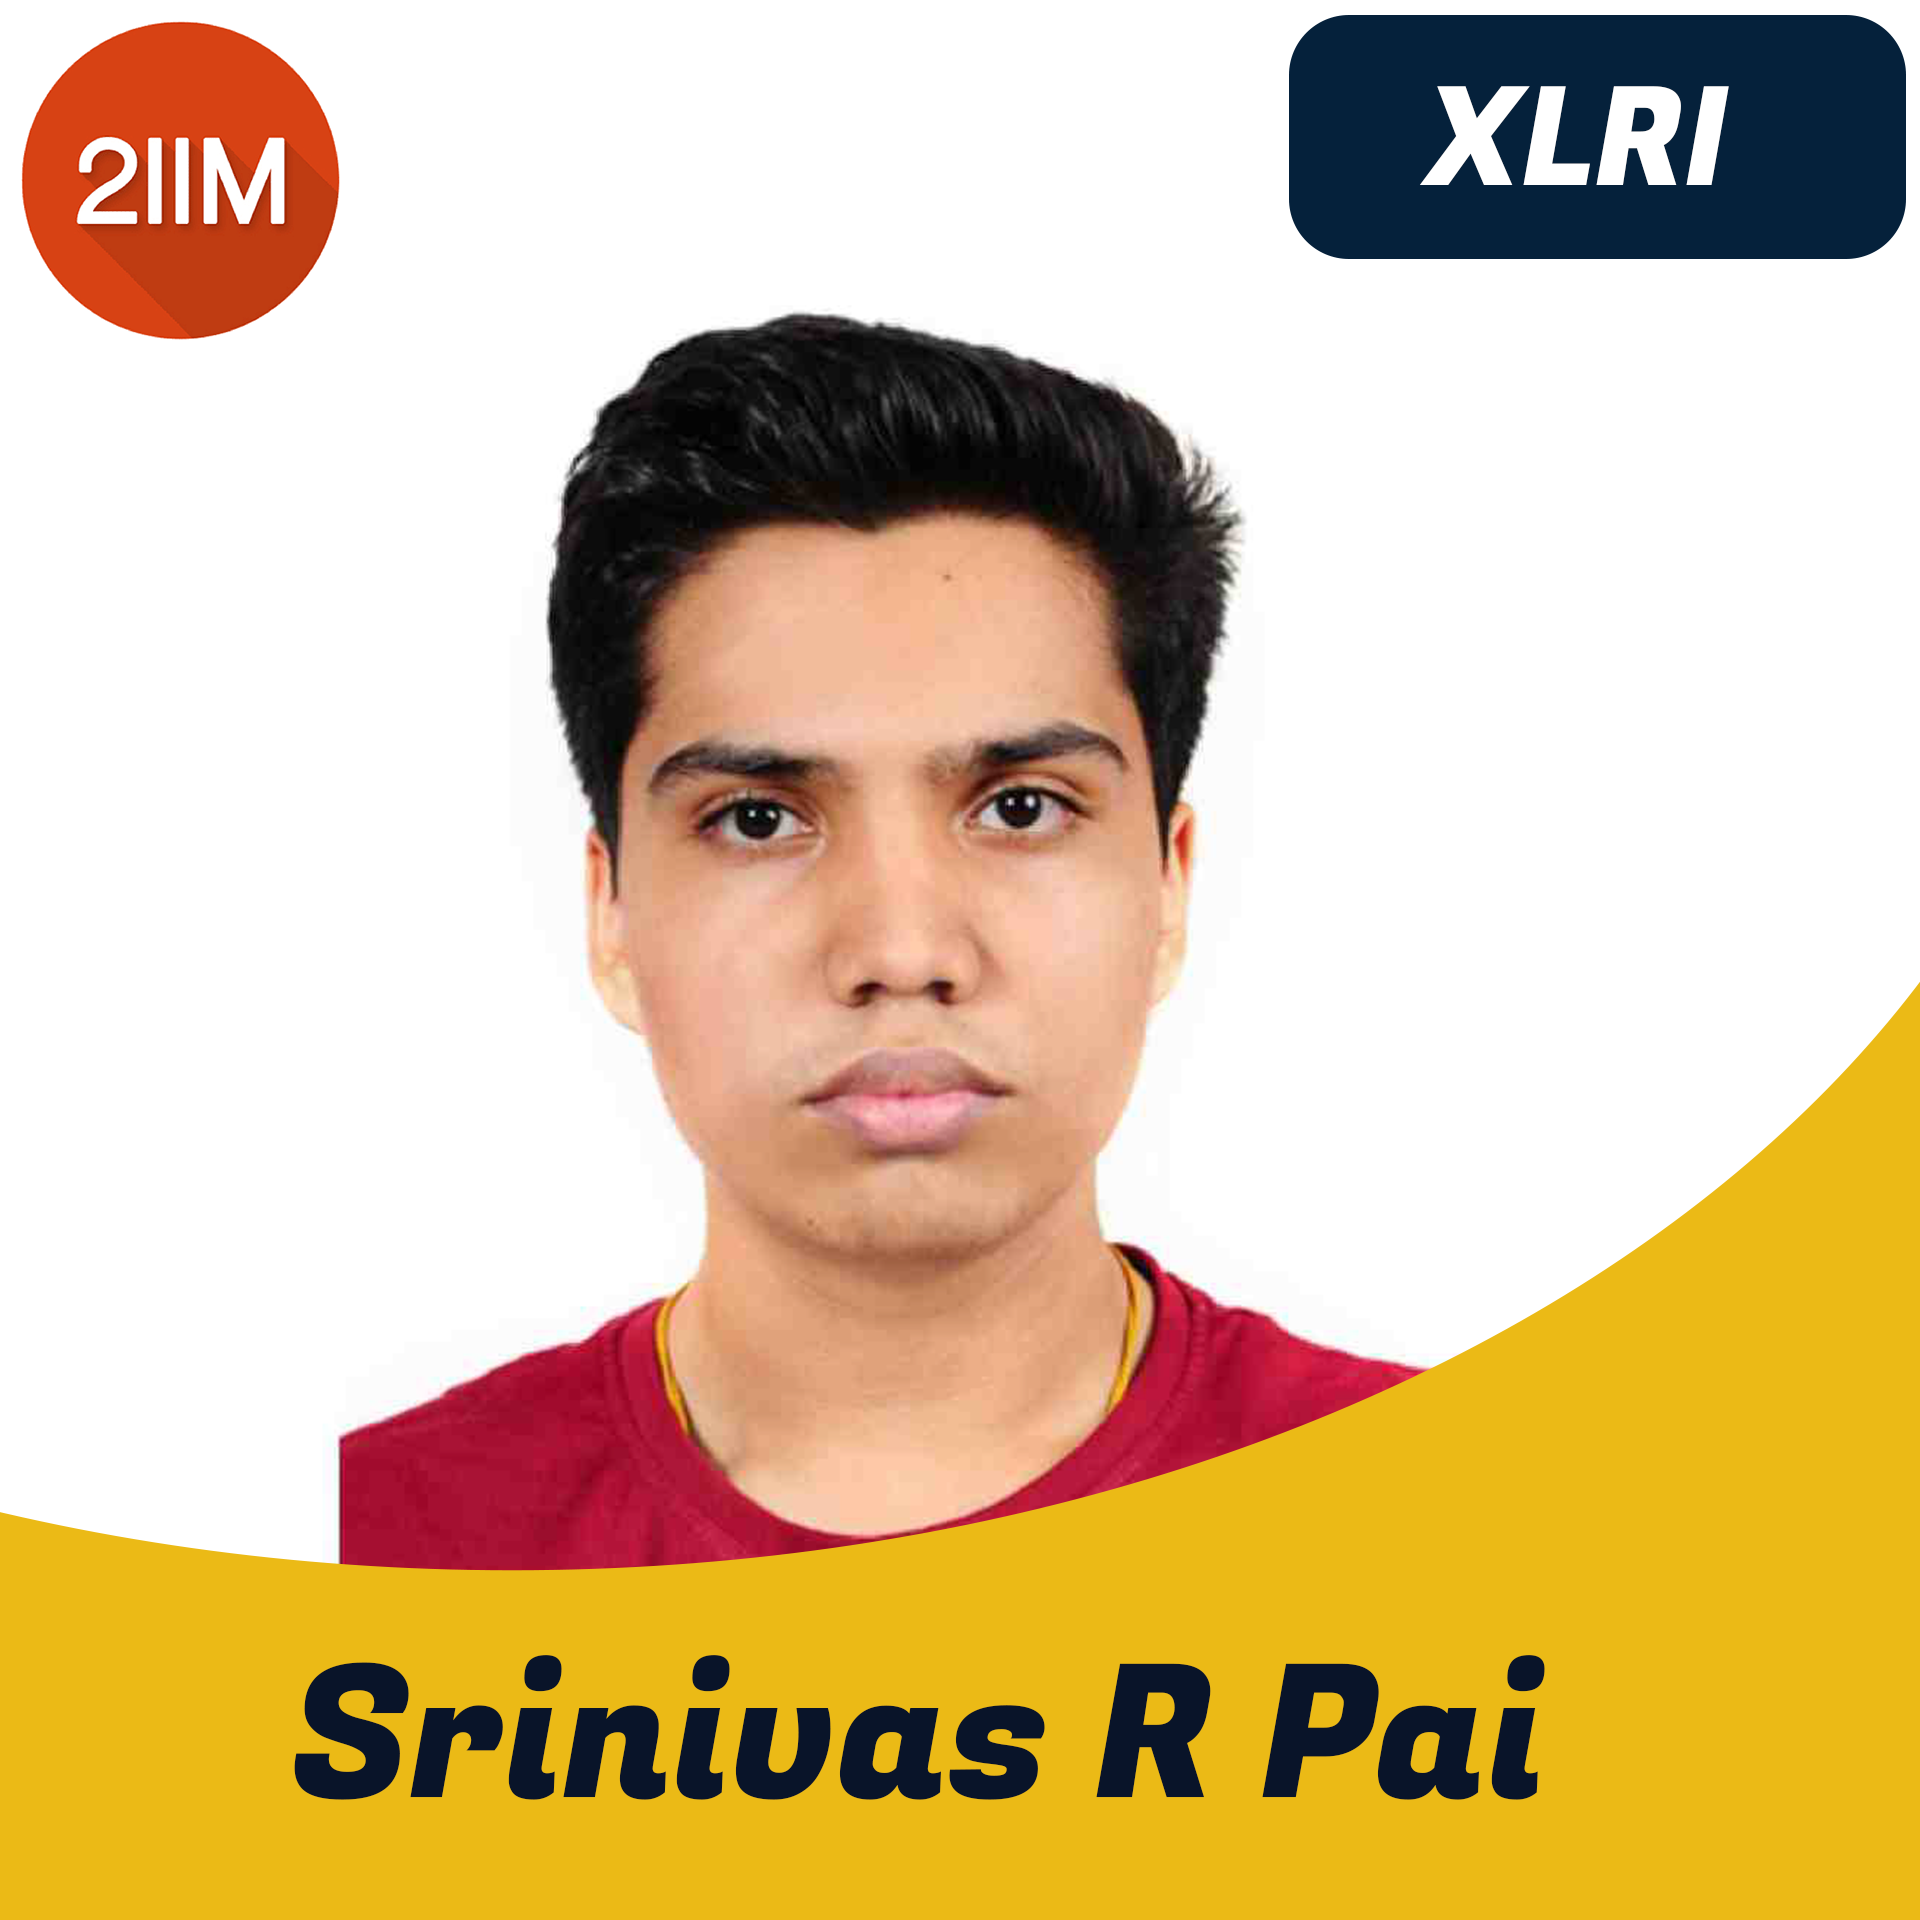  Srinivas R Pai 